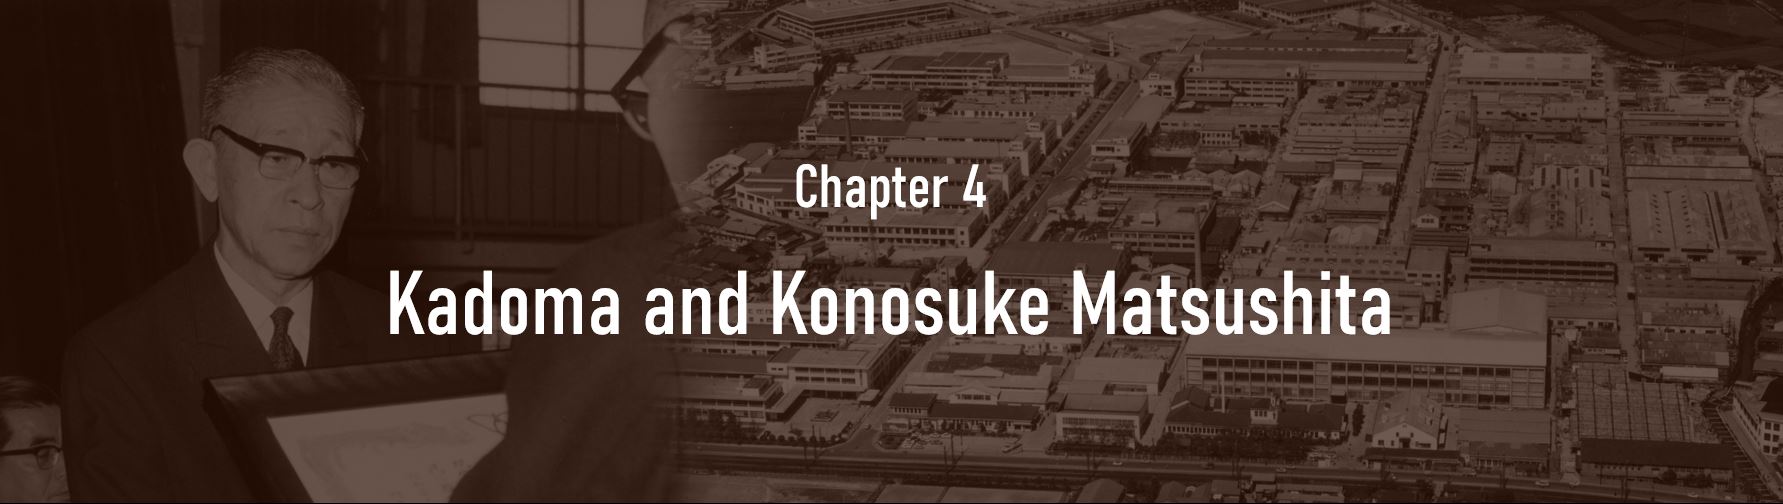 Chapter 4. Kadoma and Konosuke Matsushita